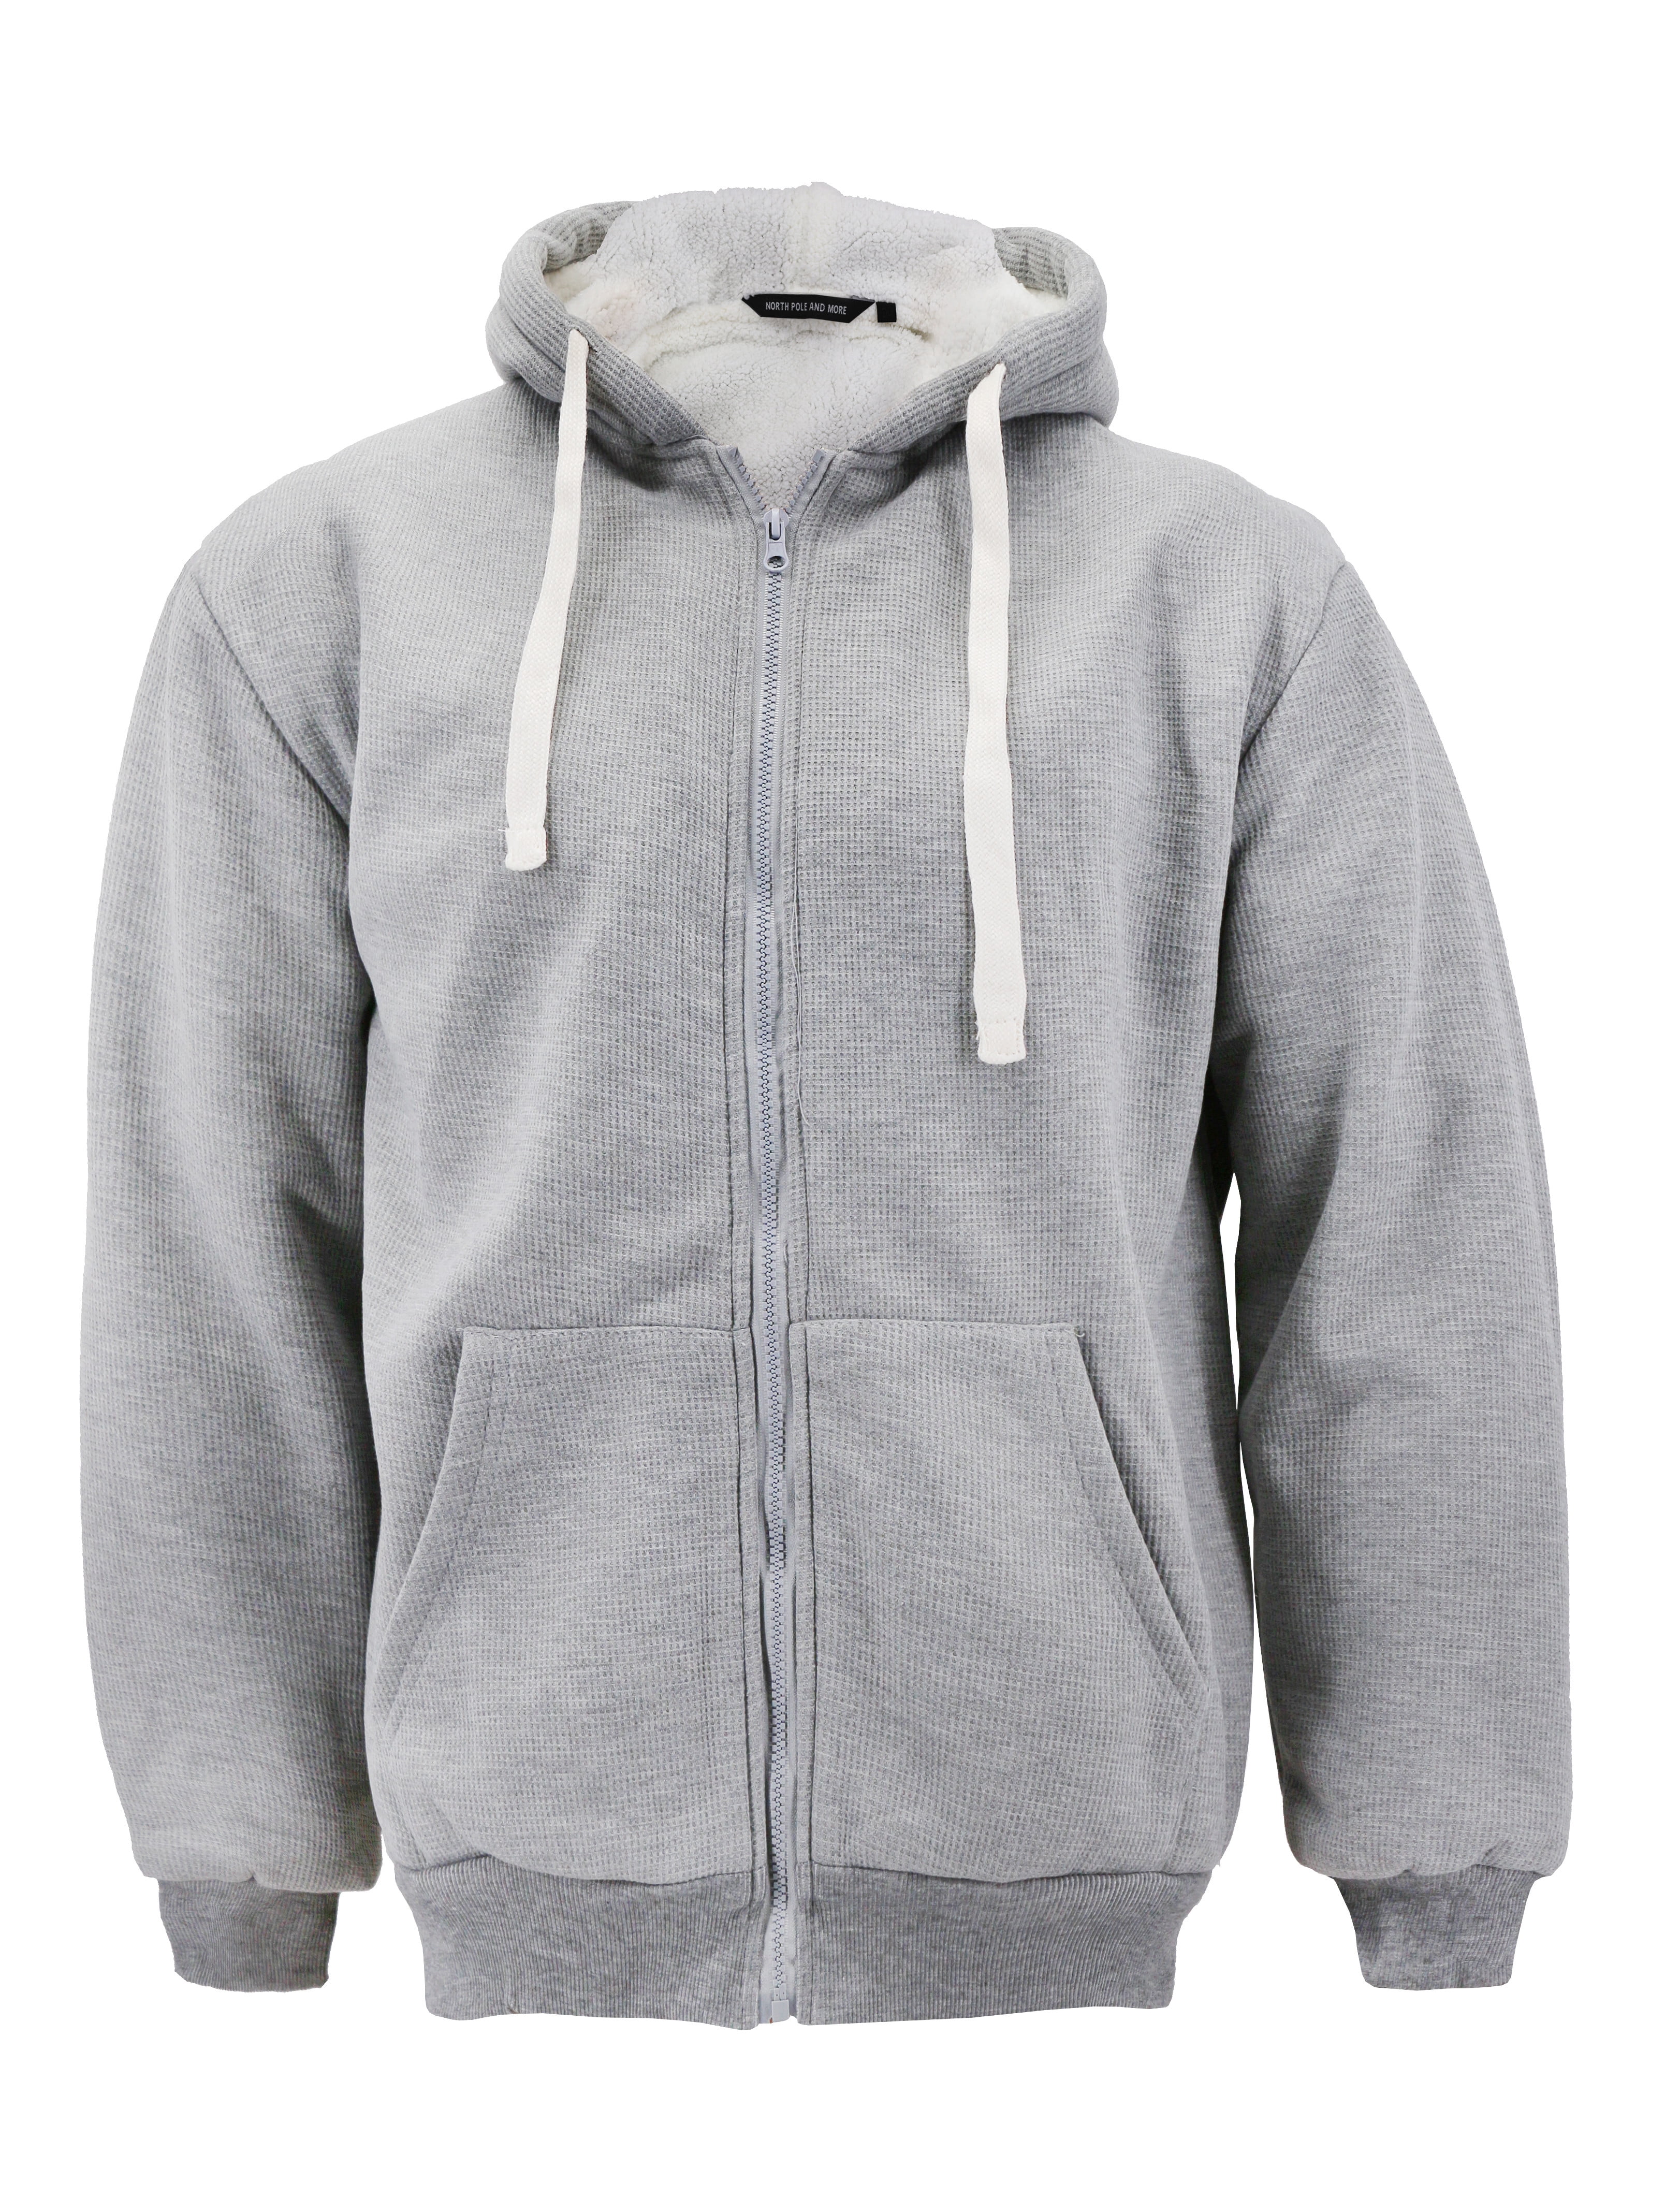 Oversized Grey Zip Up Hoodie Men : Christy Hoodie | Gray hoodie outfit ...